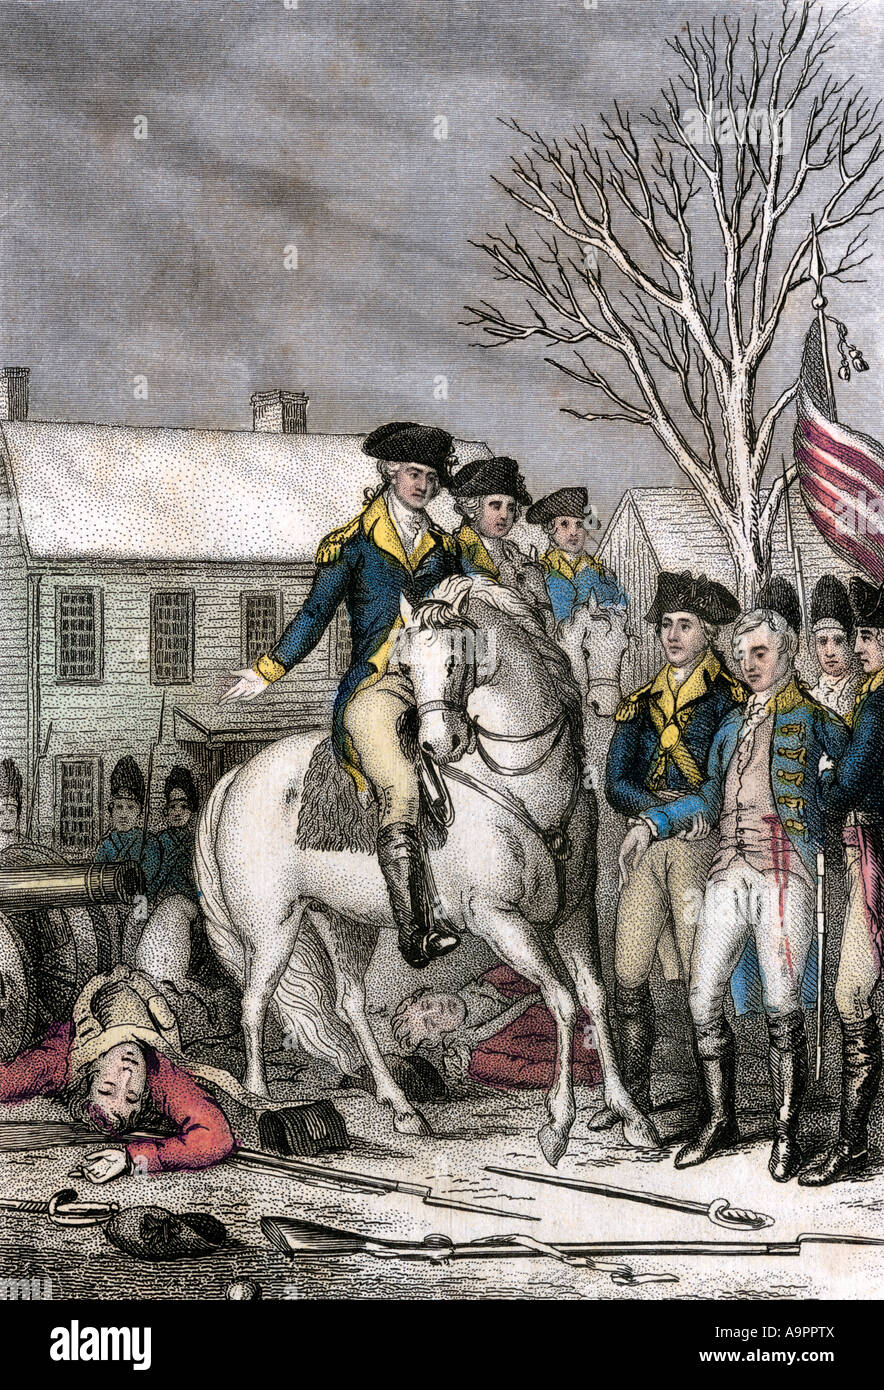 Commandant Hesse Rall mortellement blessé au cours de l'attaque américaine sur Trenton New Jersey décembre 1776. Gravure couleur Banque D'Images